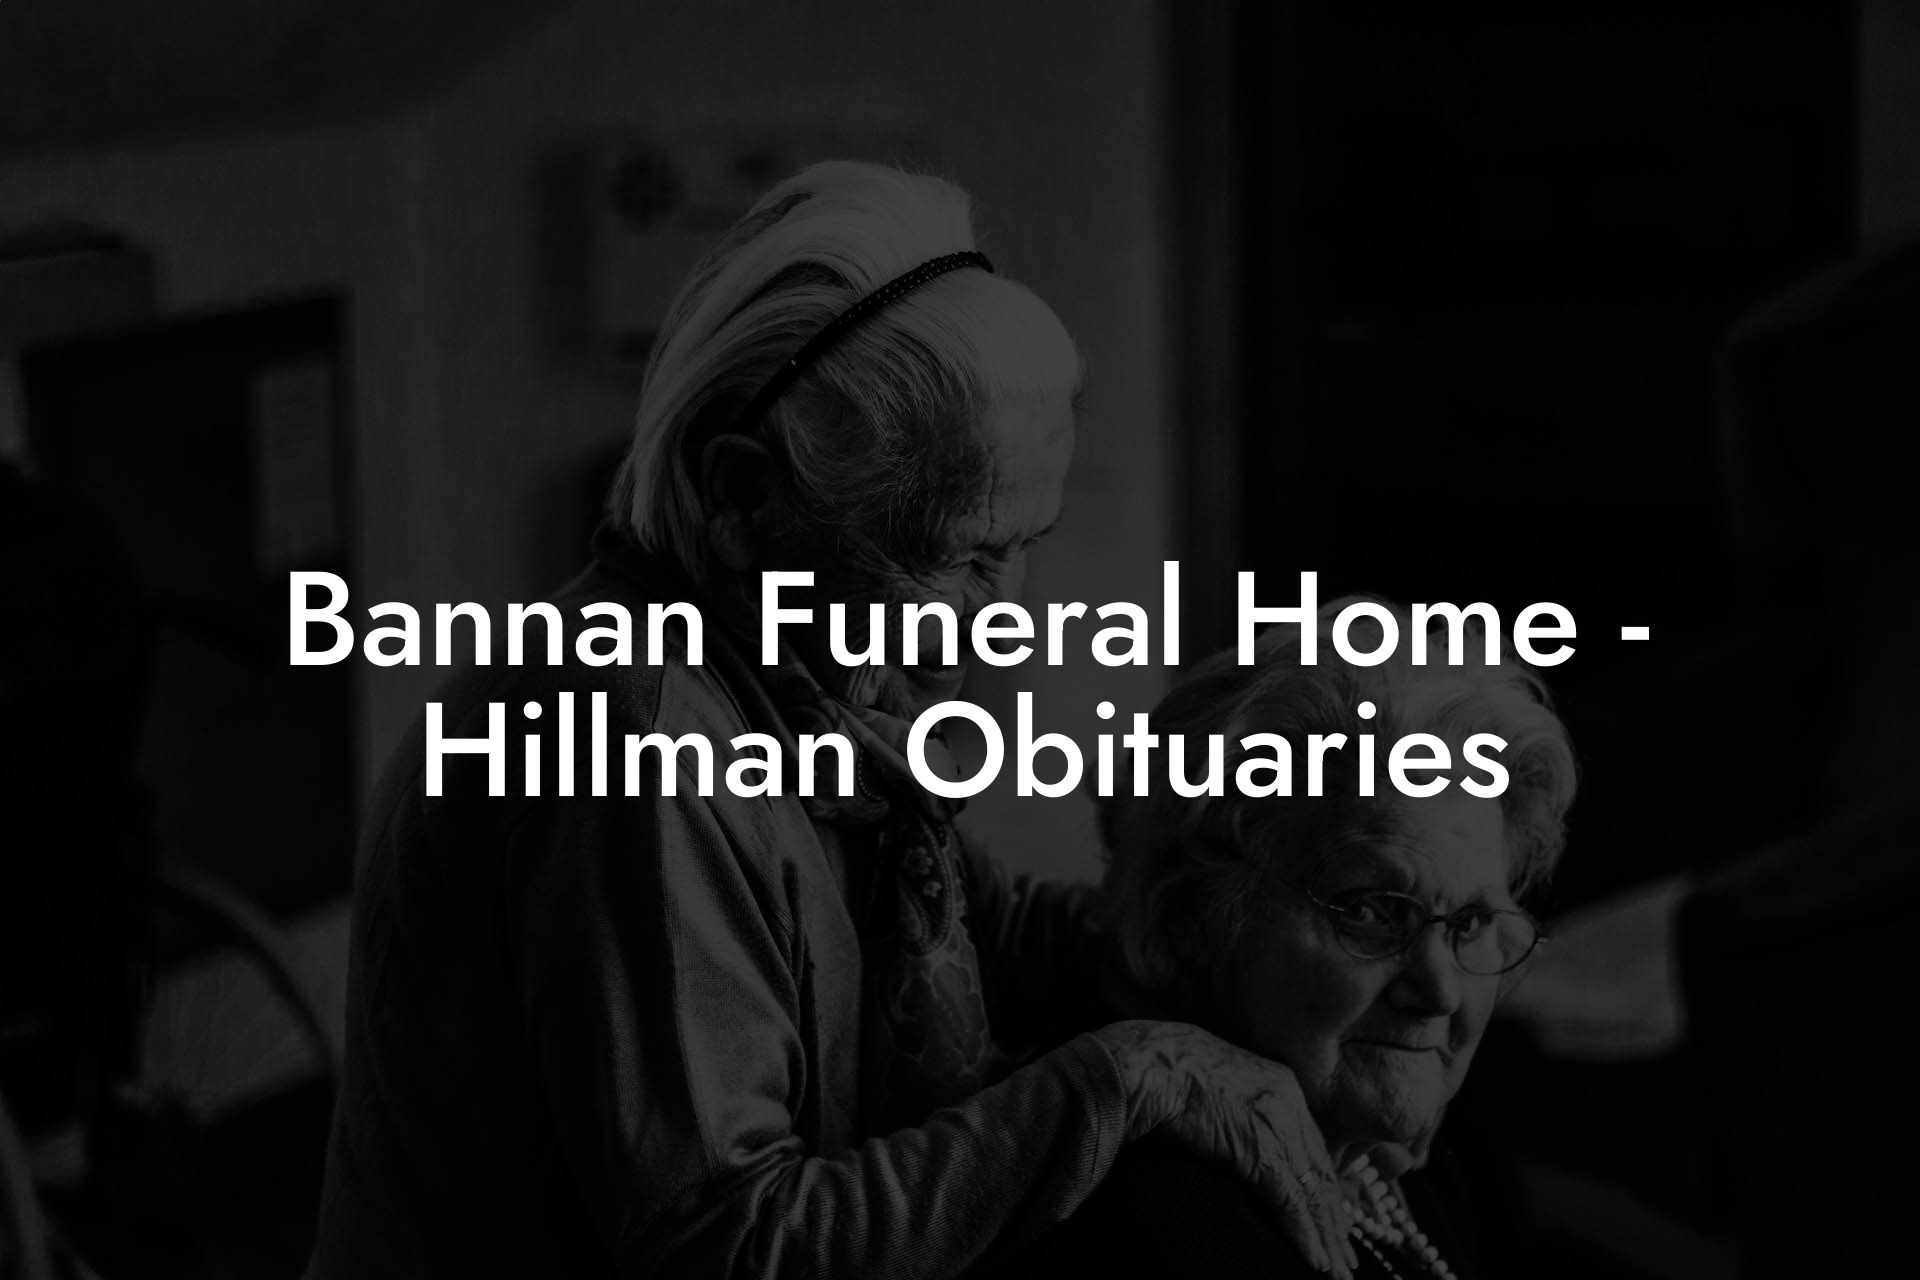 Bannan Funeral Home - Hillman Obituaries